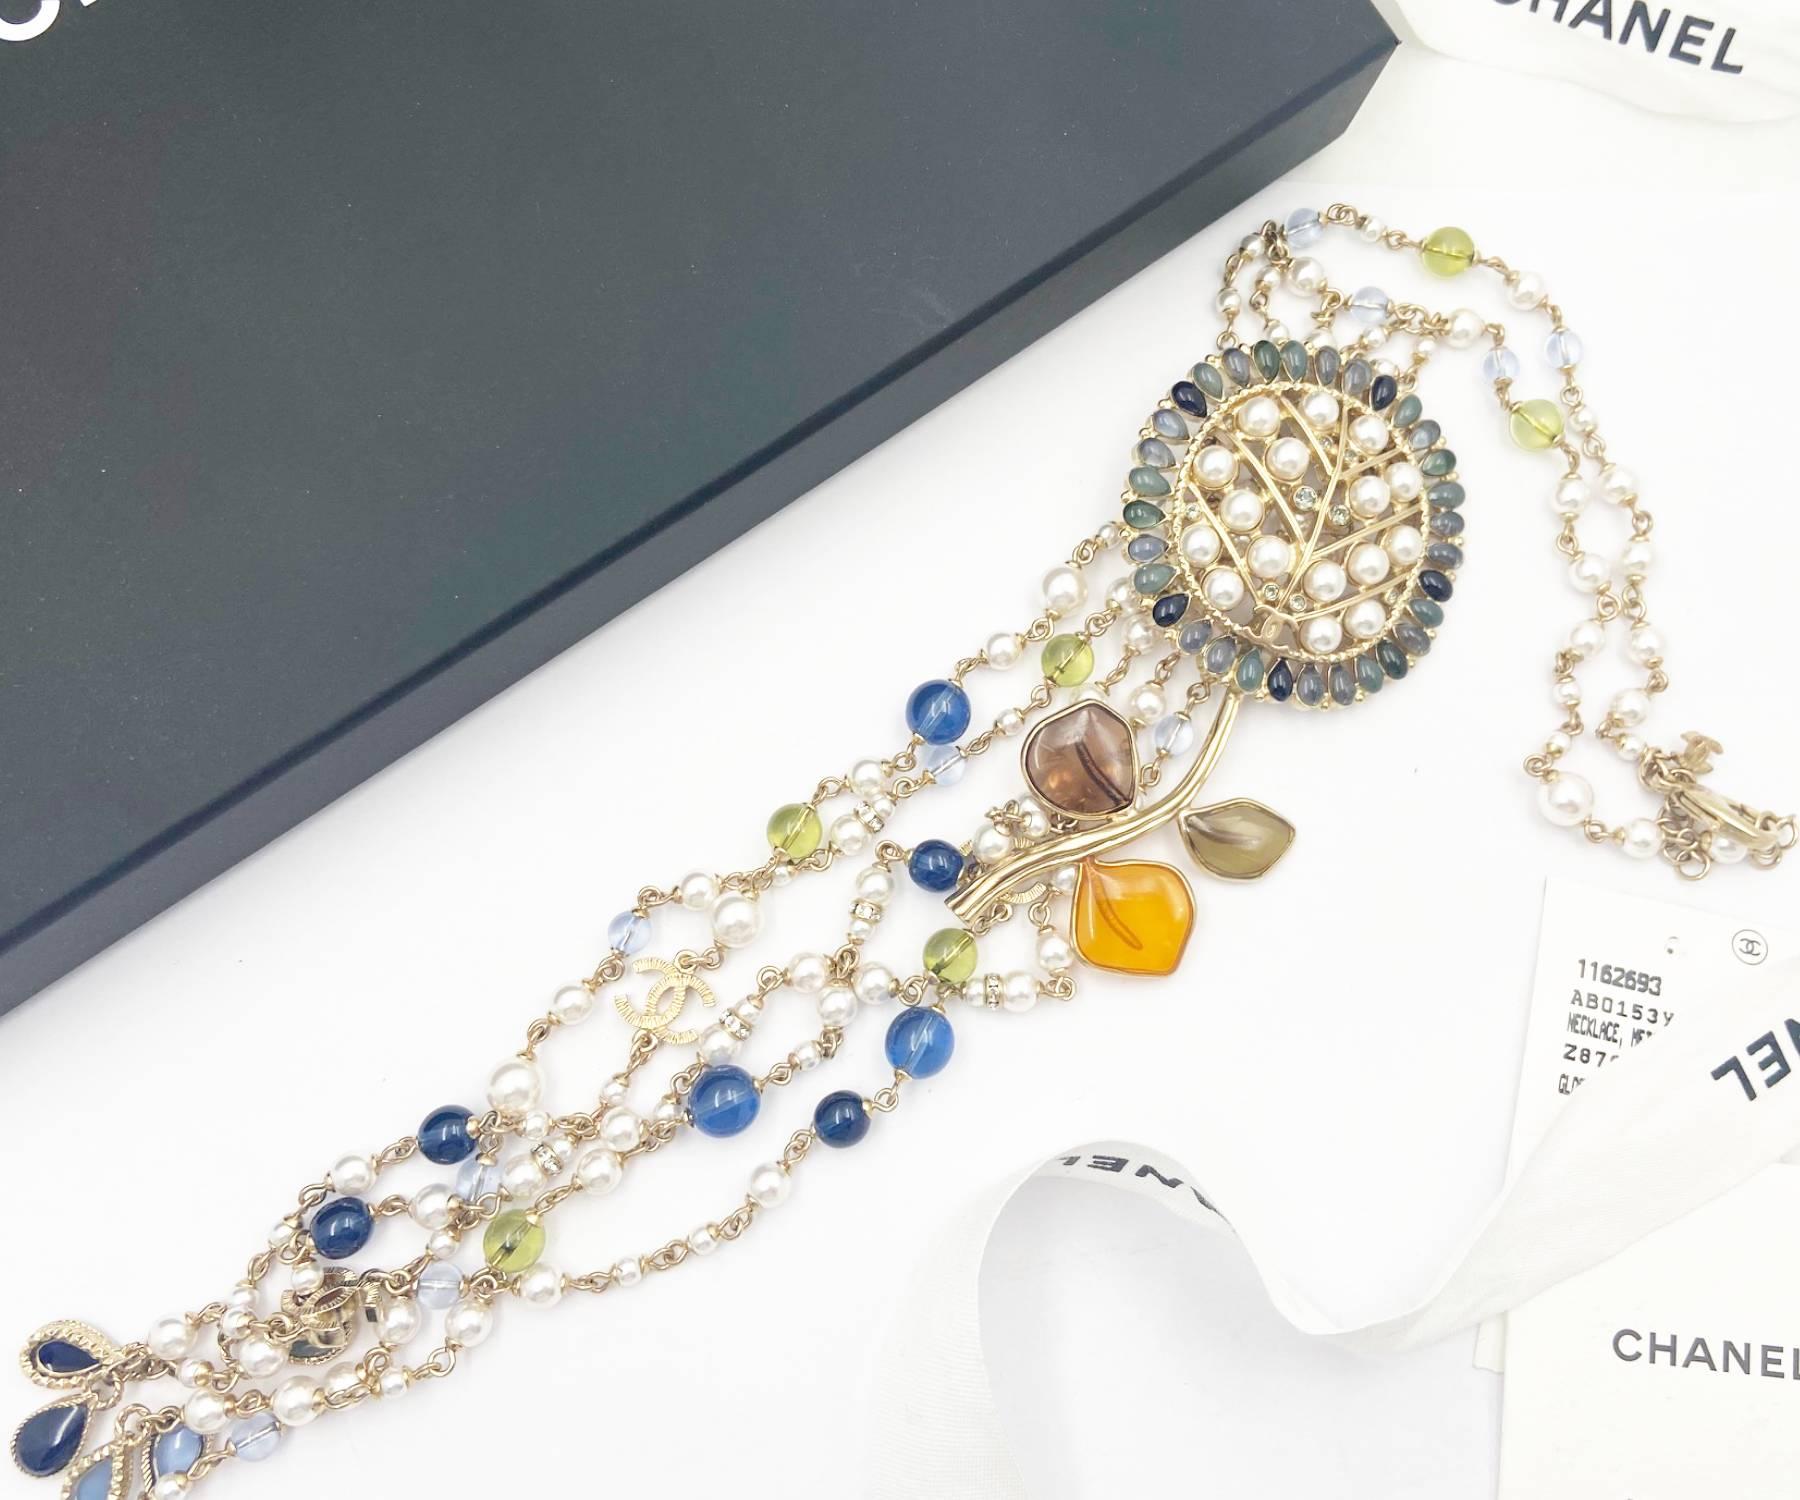 Chanel Marke neue Gold CC bunte Blume Choker lange baumelnden Perlen Perlenkette

*Der Stempel trägt die Nummer 18.
*Hergestellt in Frankreich
*Lieferung mit Originalverpackung, Tasche, Anhänger und Booklet
*Fabrikneu

-Die Gesamtlänge des Halsreifs